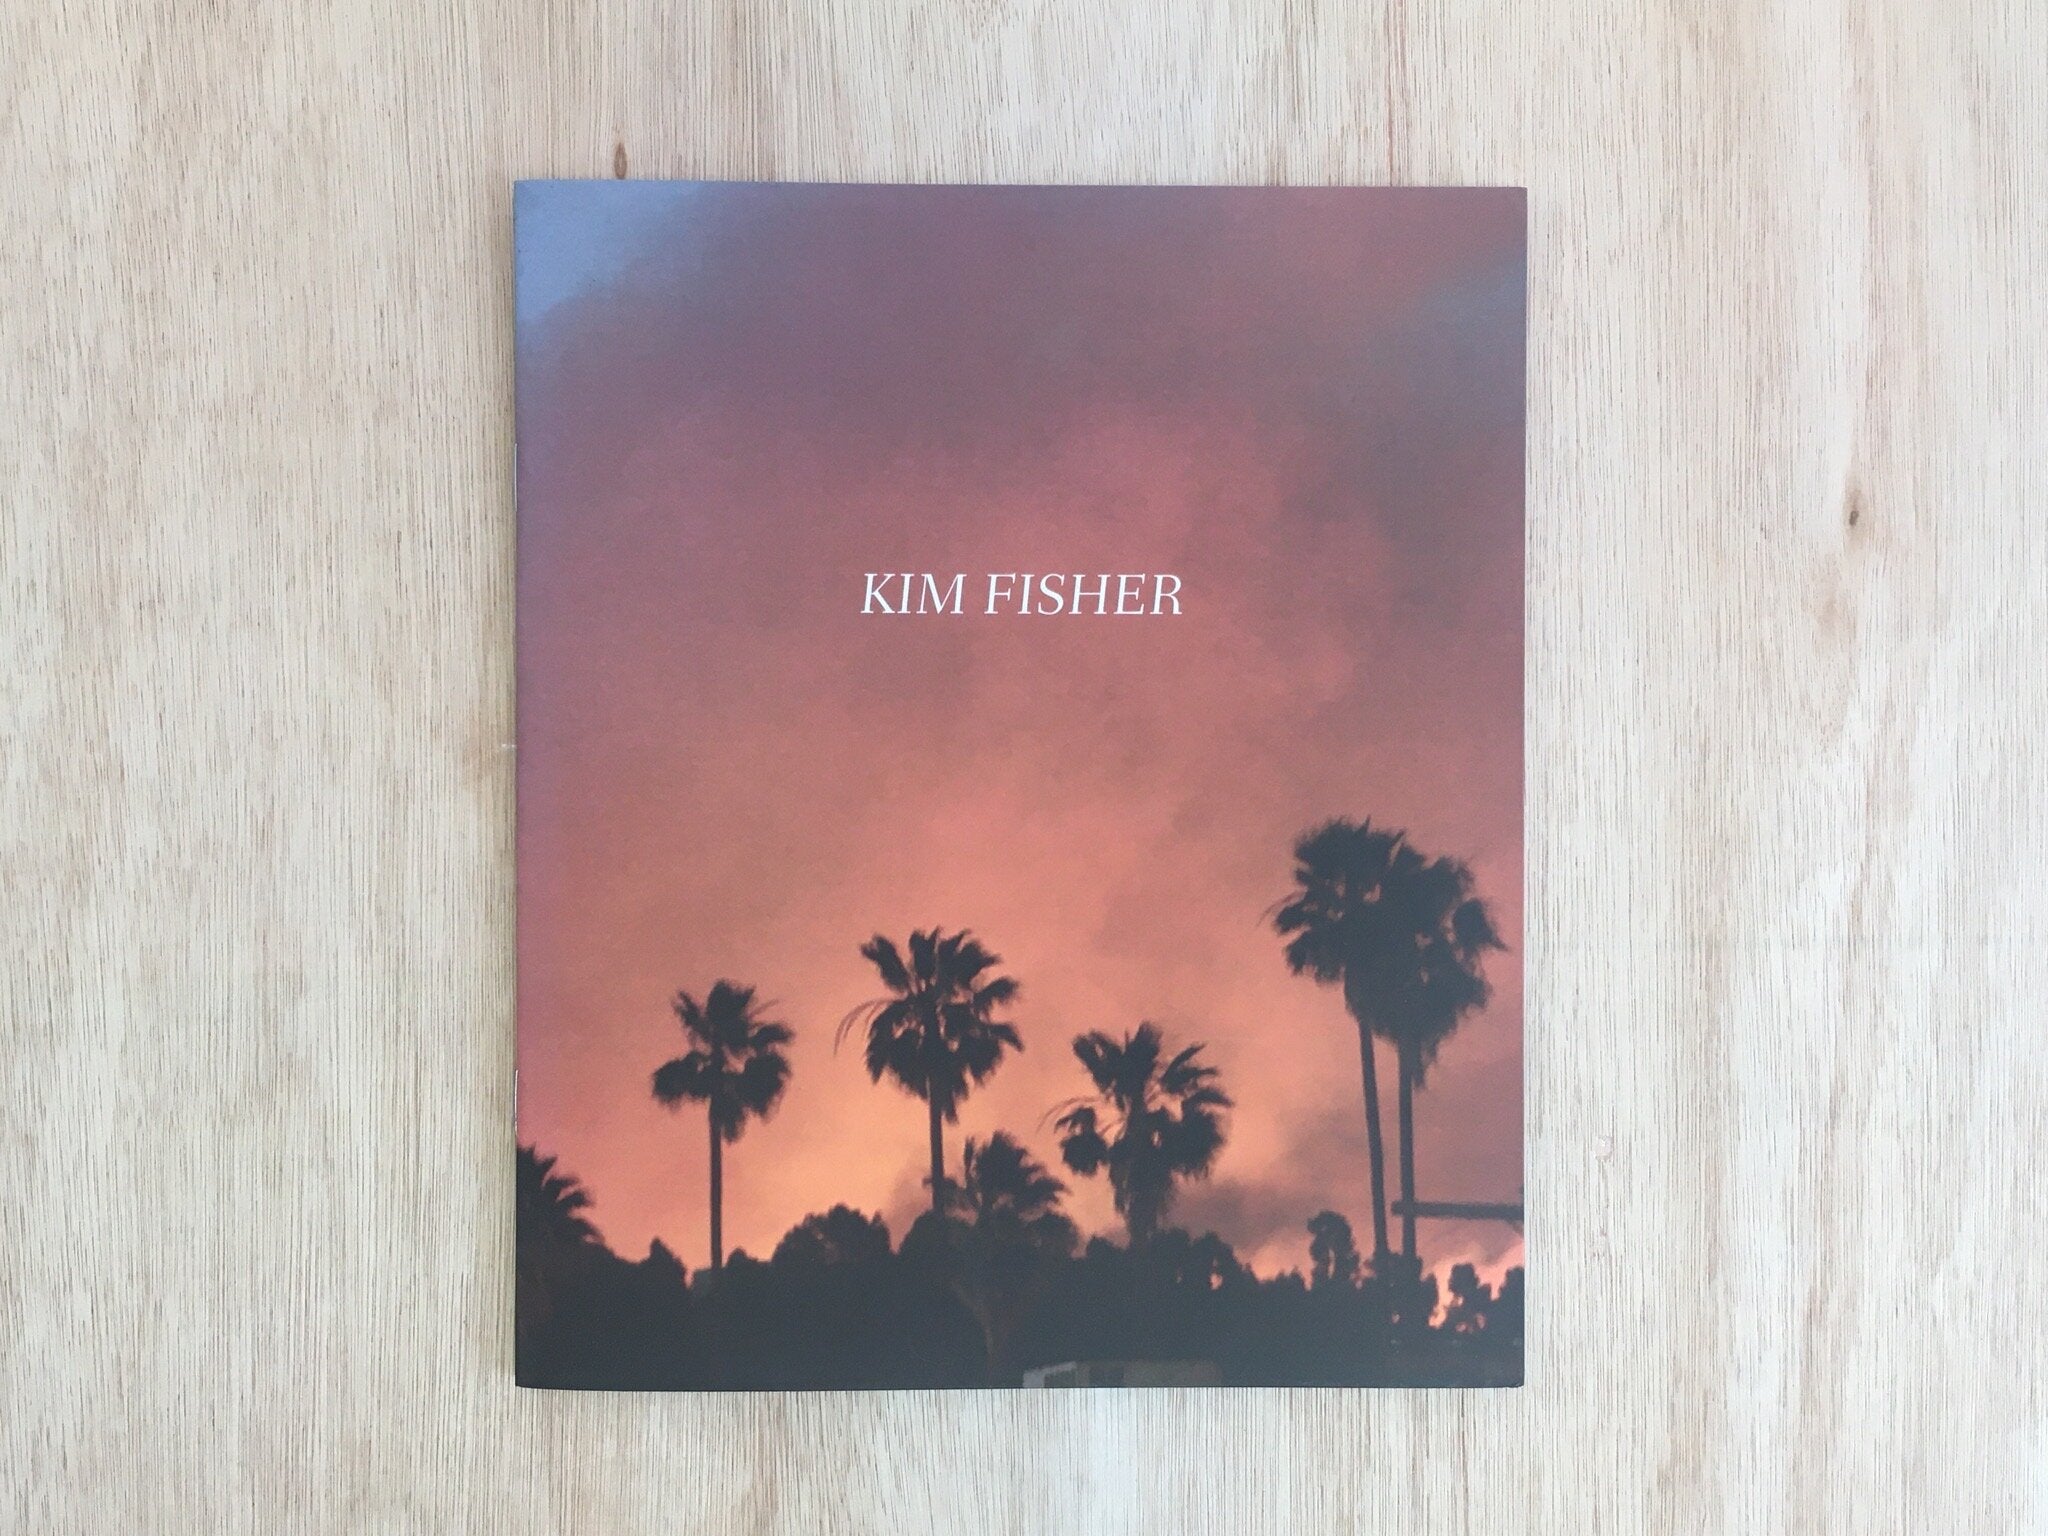 KIM FISHER BY Kim Fisher